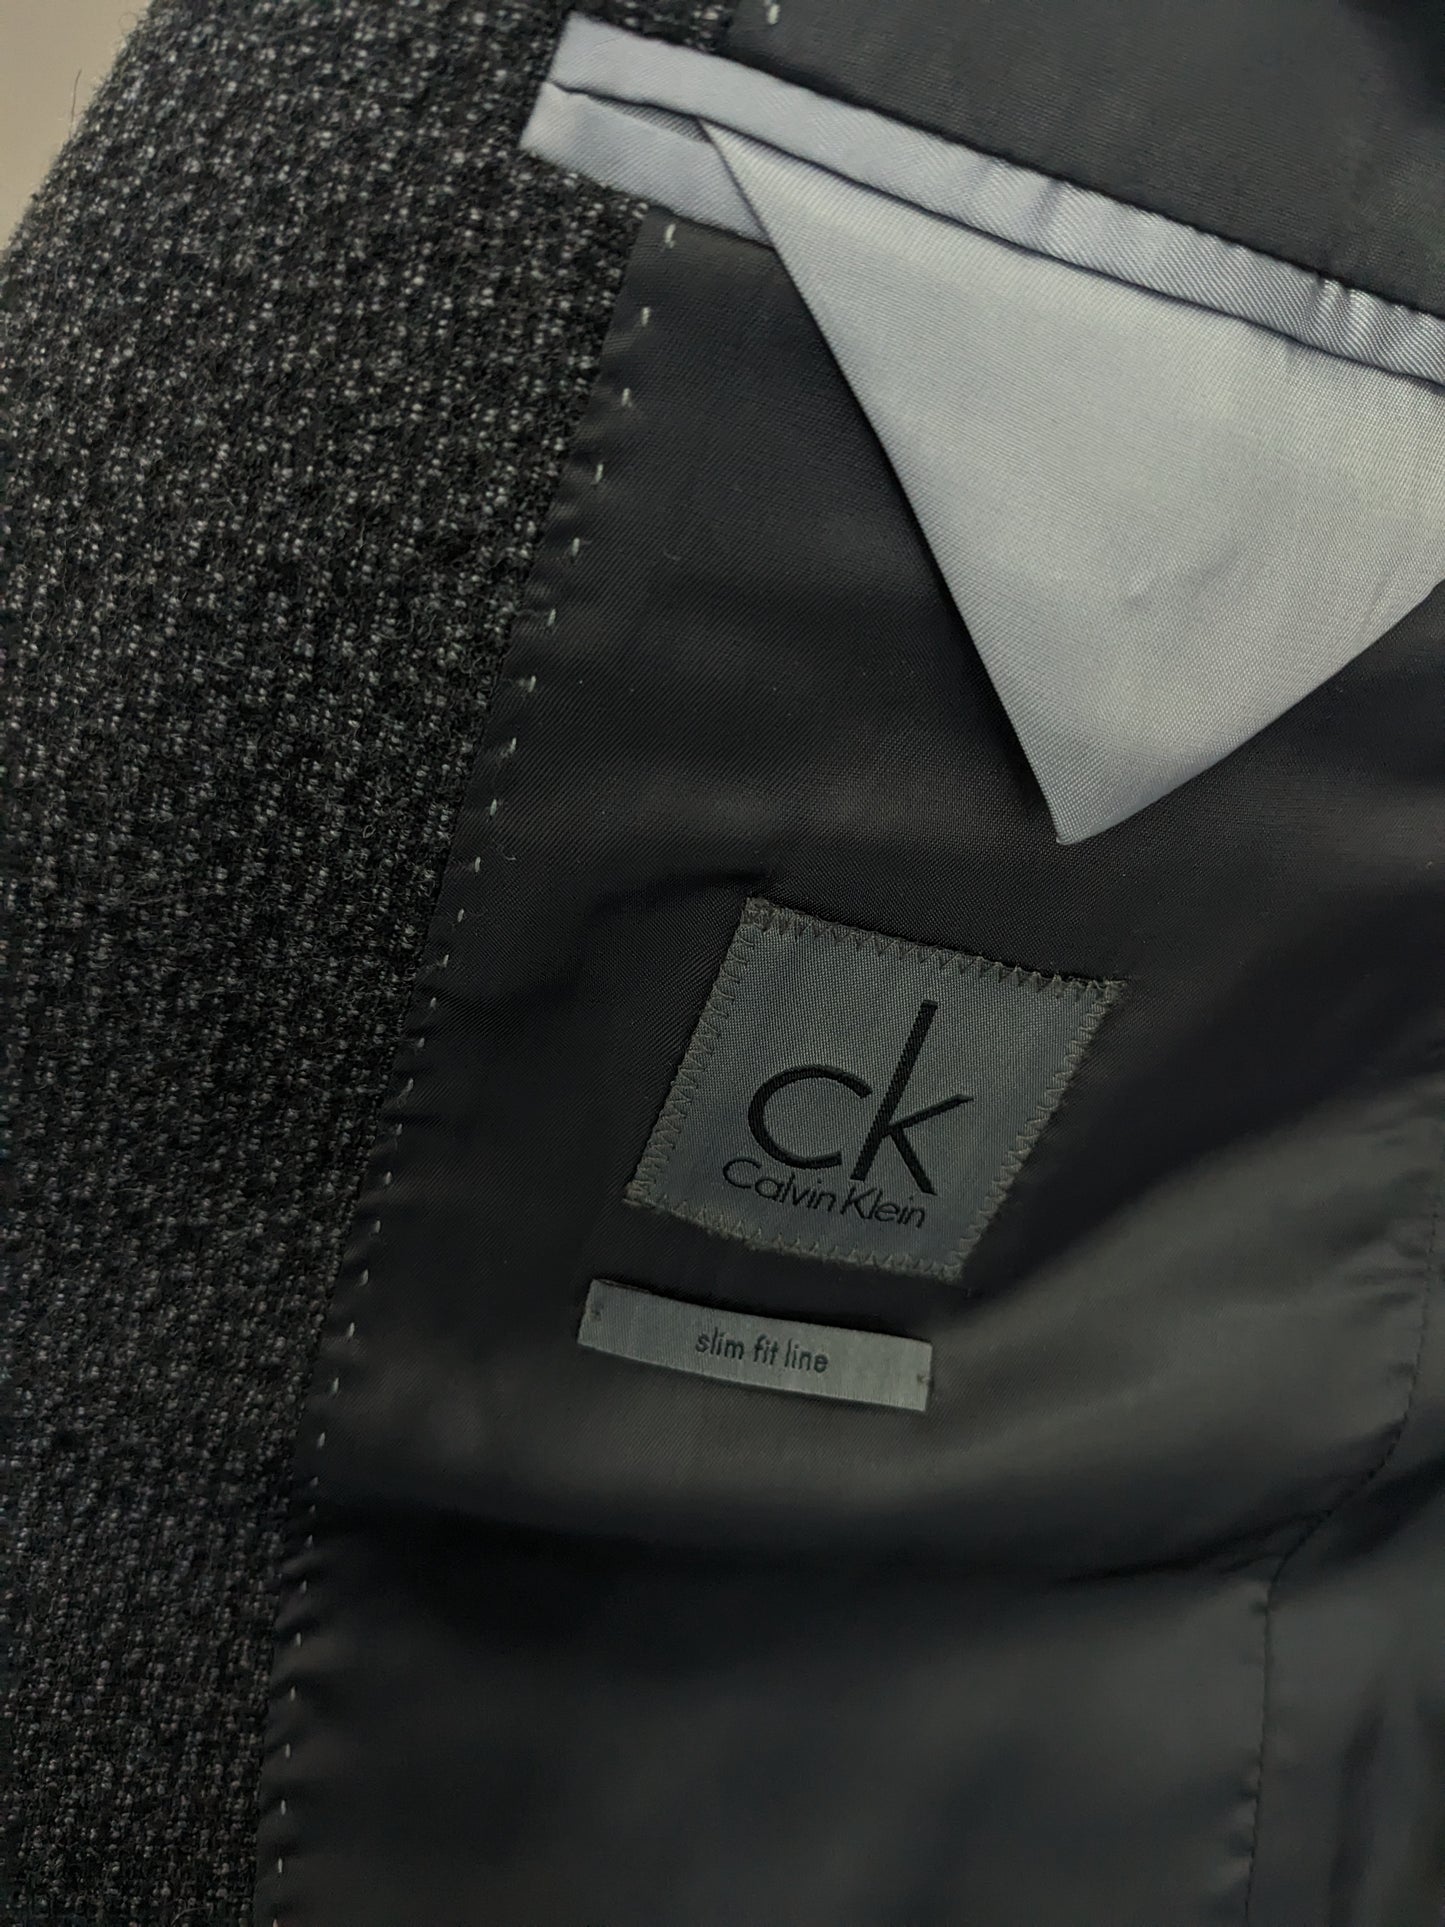 CK Calvin Klein Wolljacke. Graues schwarzes gemischtes Motiv. Größe 50 / M. Slim Fit Line.